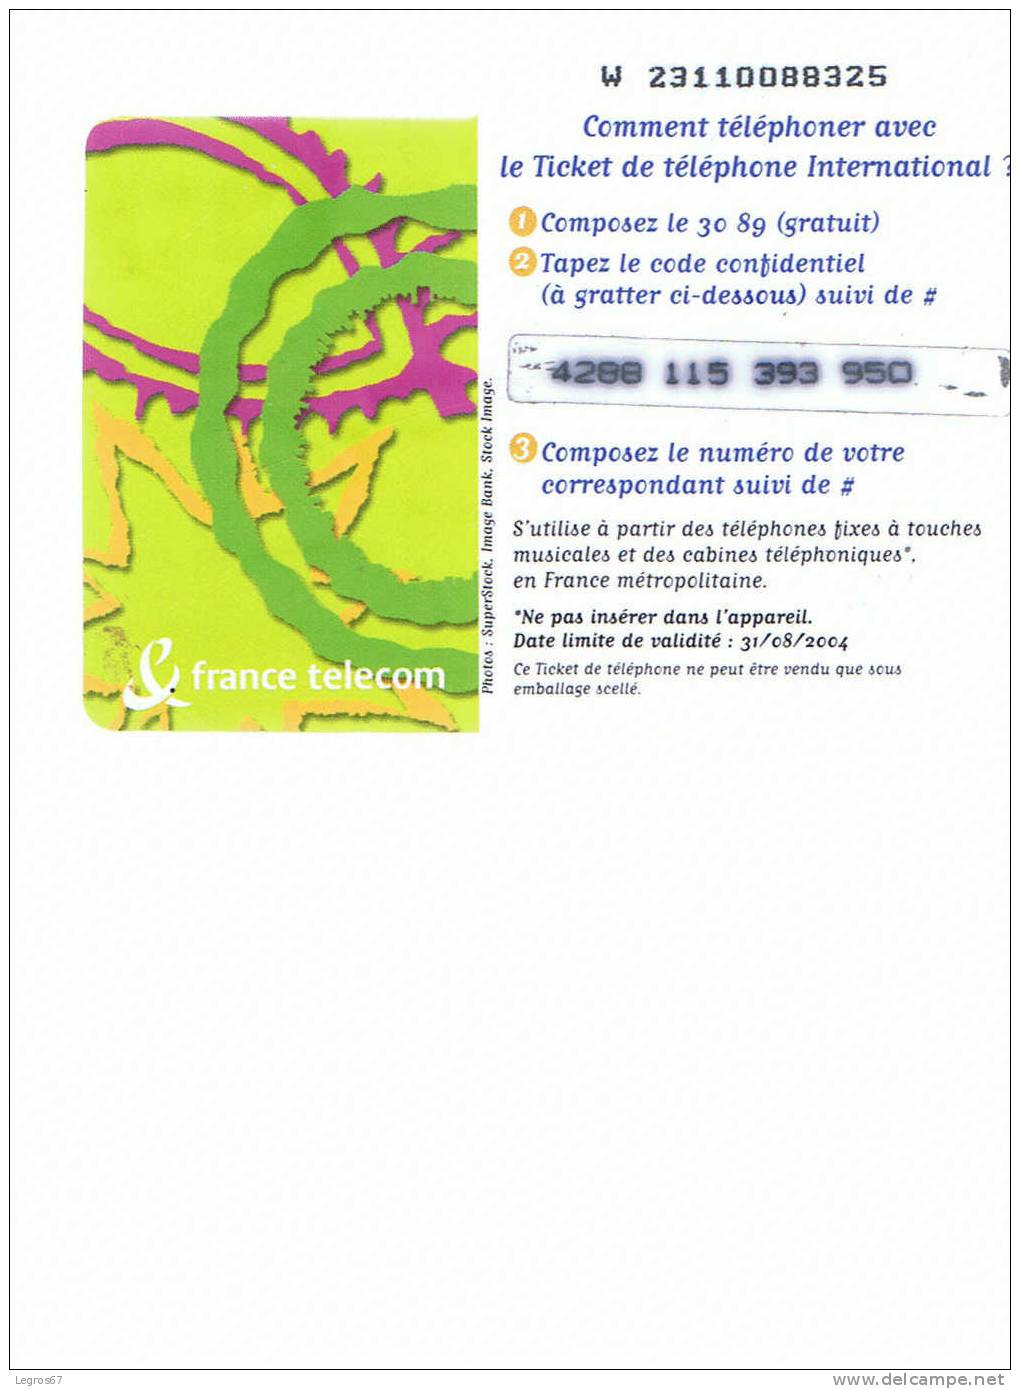 TICKET TELEPHONE 7.5 € - 31/08/2004 - FT